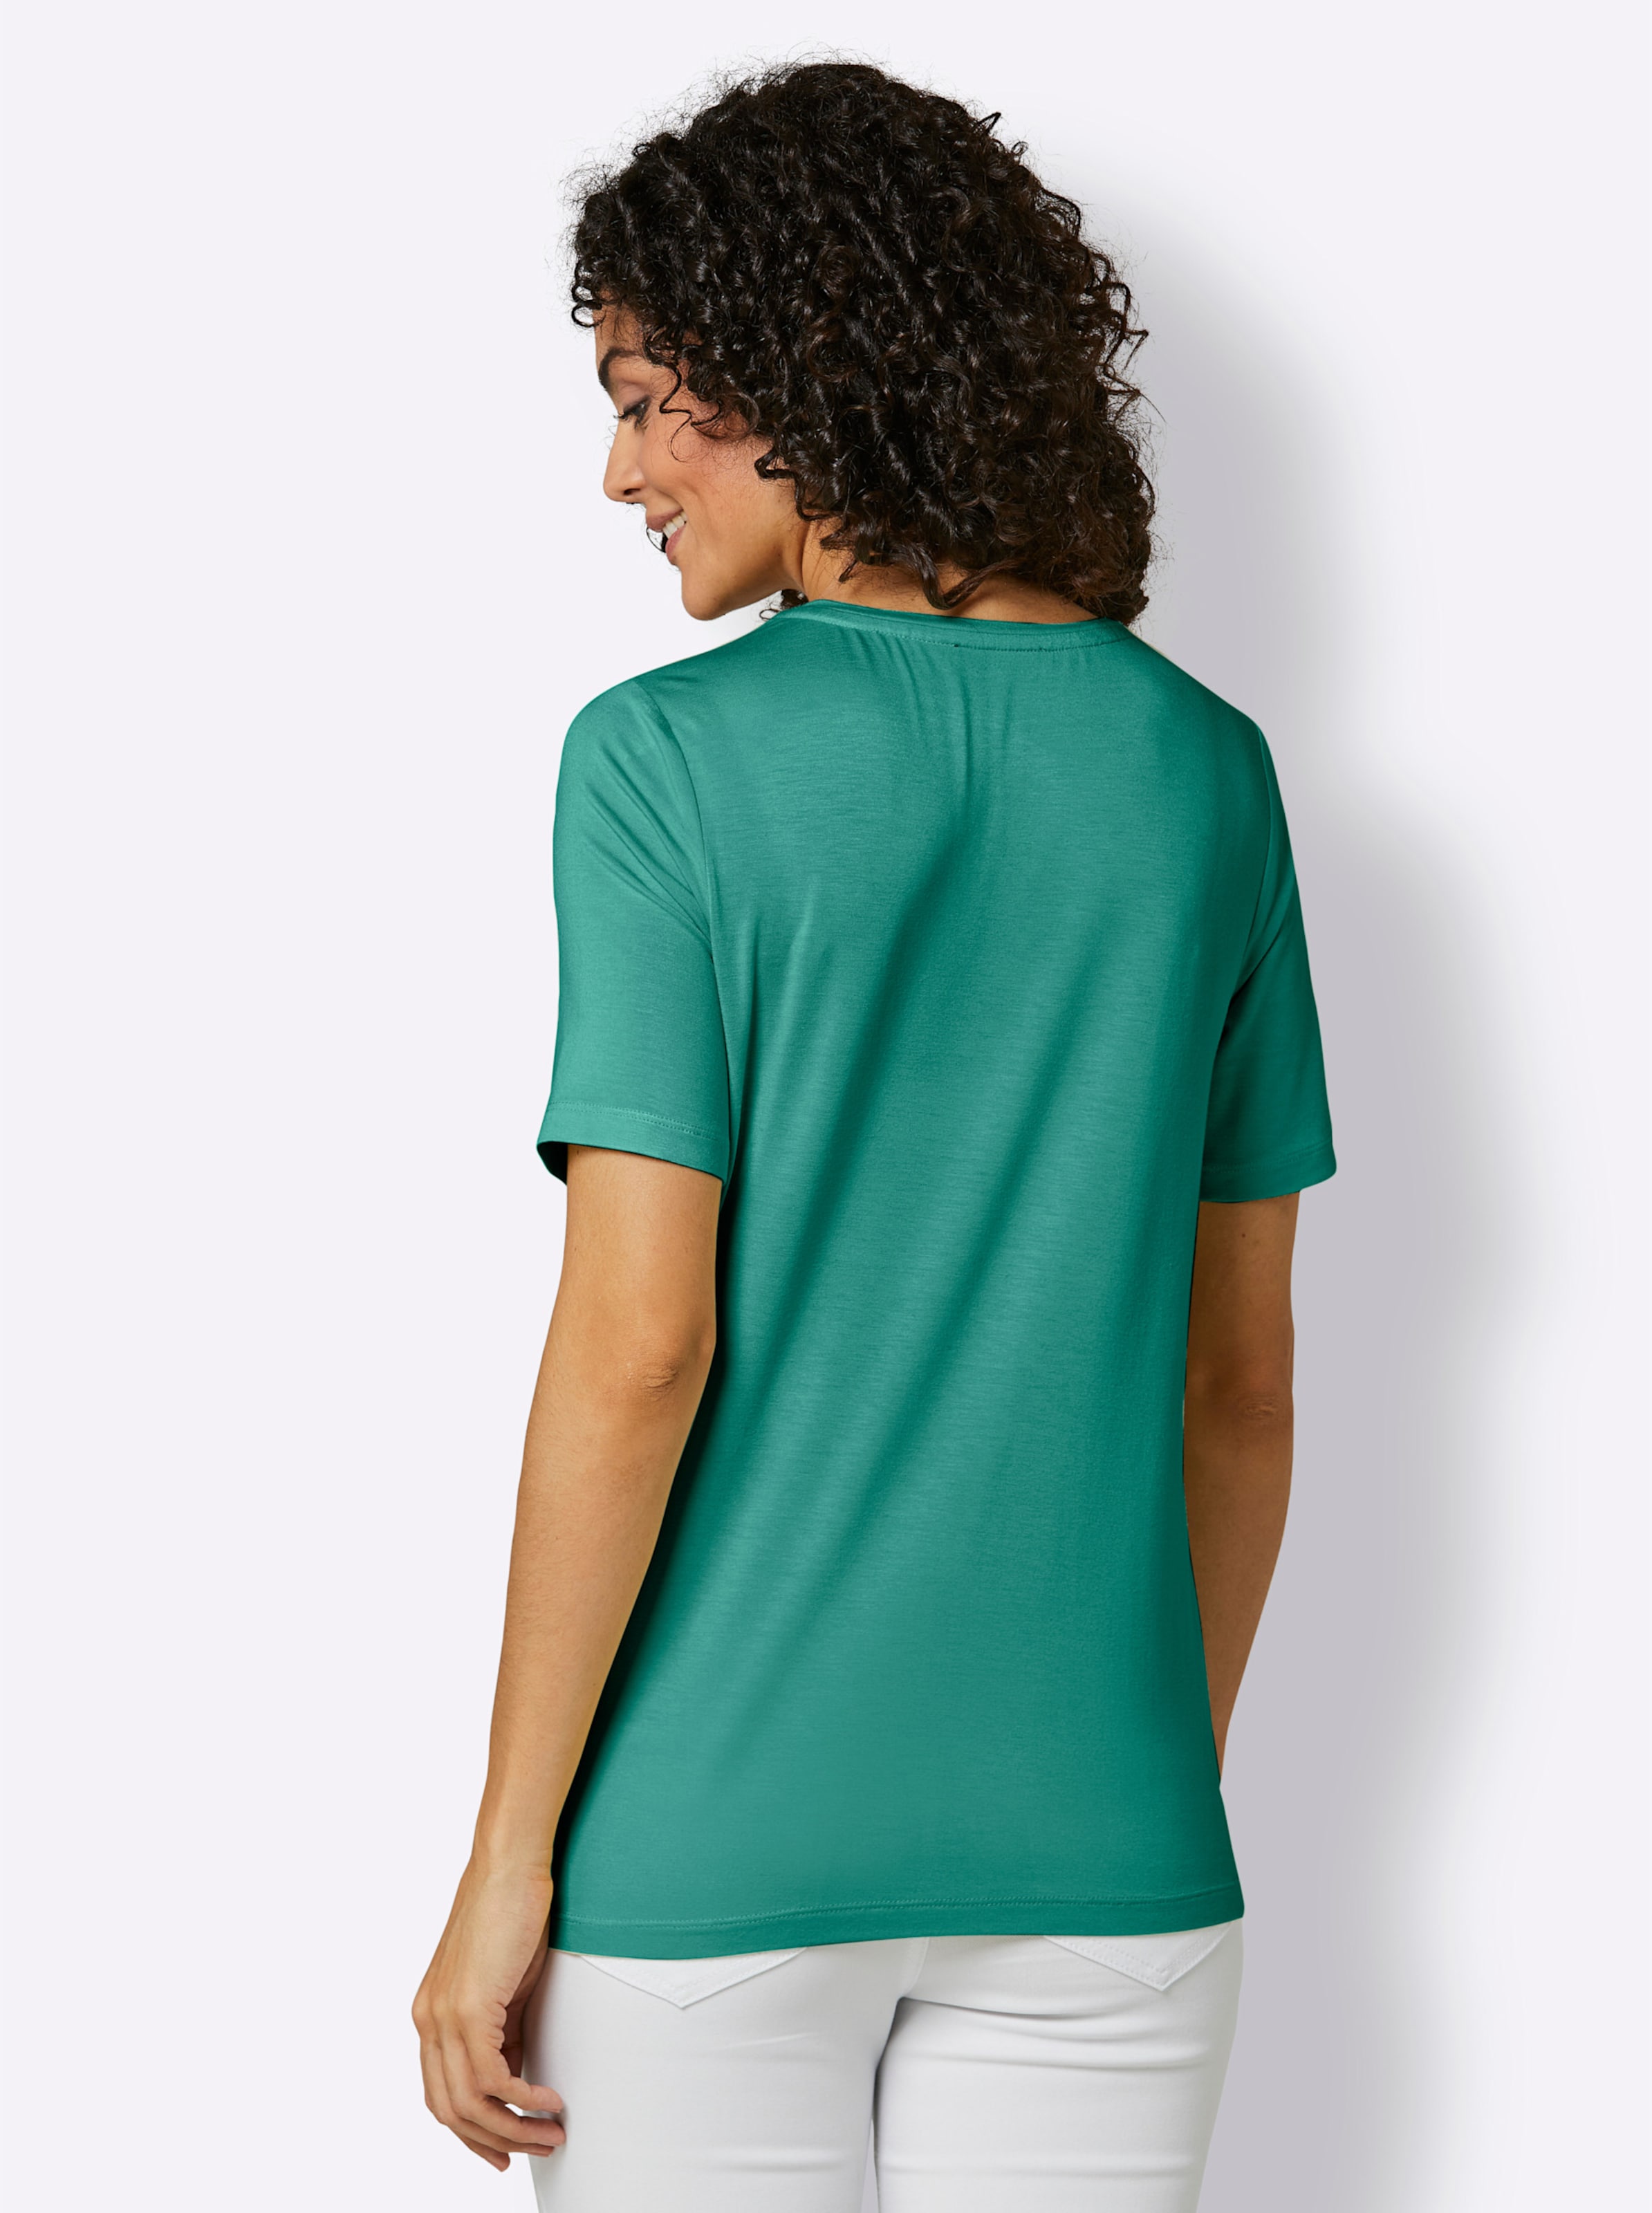 Smaragd günstig Kaufen-Edel-Viskose-Shirt in smaragd von CREATION L PREMIUM. Edel-Viskose-Shirt in smaragd von CREATION L PREMIUM <![CDATA[Das Edel-Viskose-Shirt aus Bambus-Zellstoff begeistert als ein erlesenes Basic, das mit hohem Tragekomfort, und seidig glänzender Viskose-